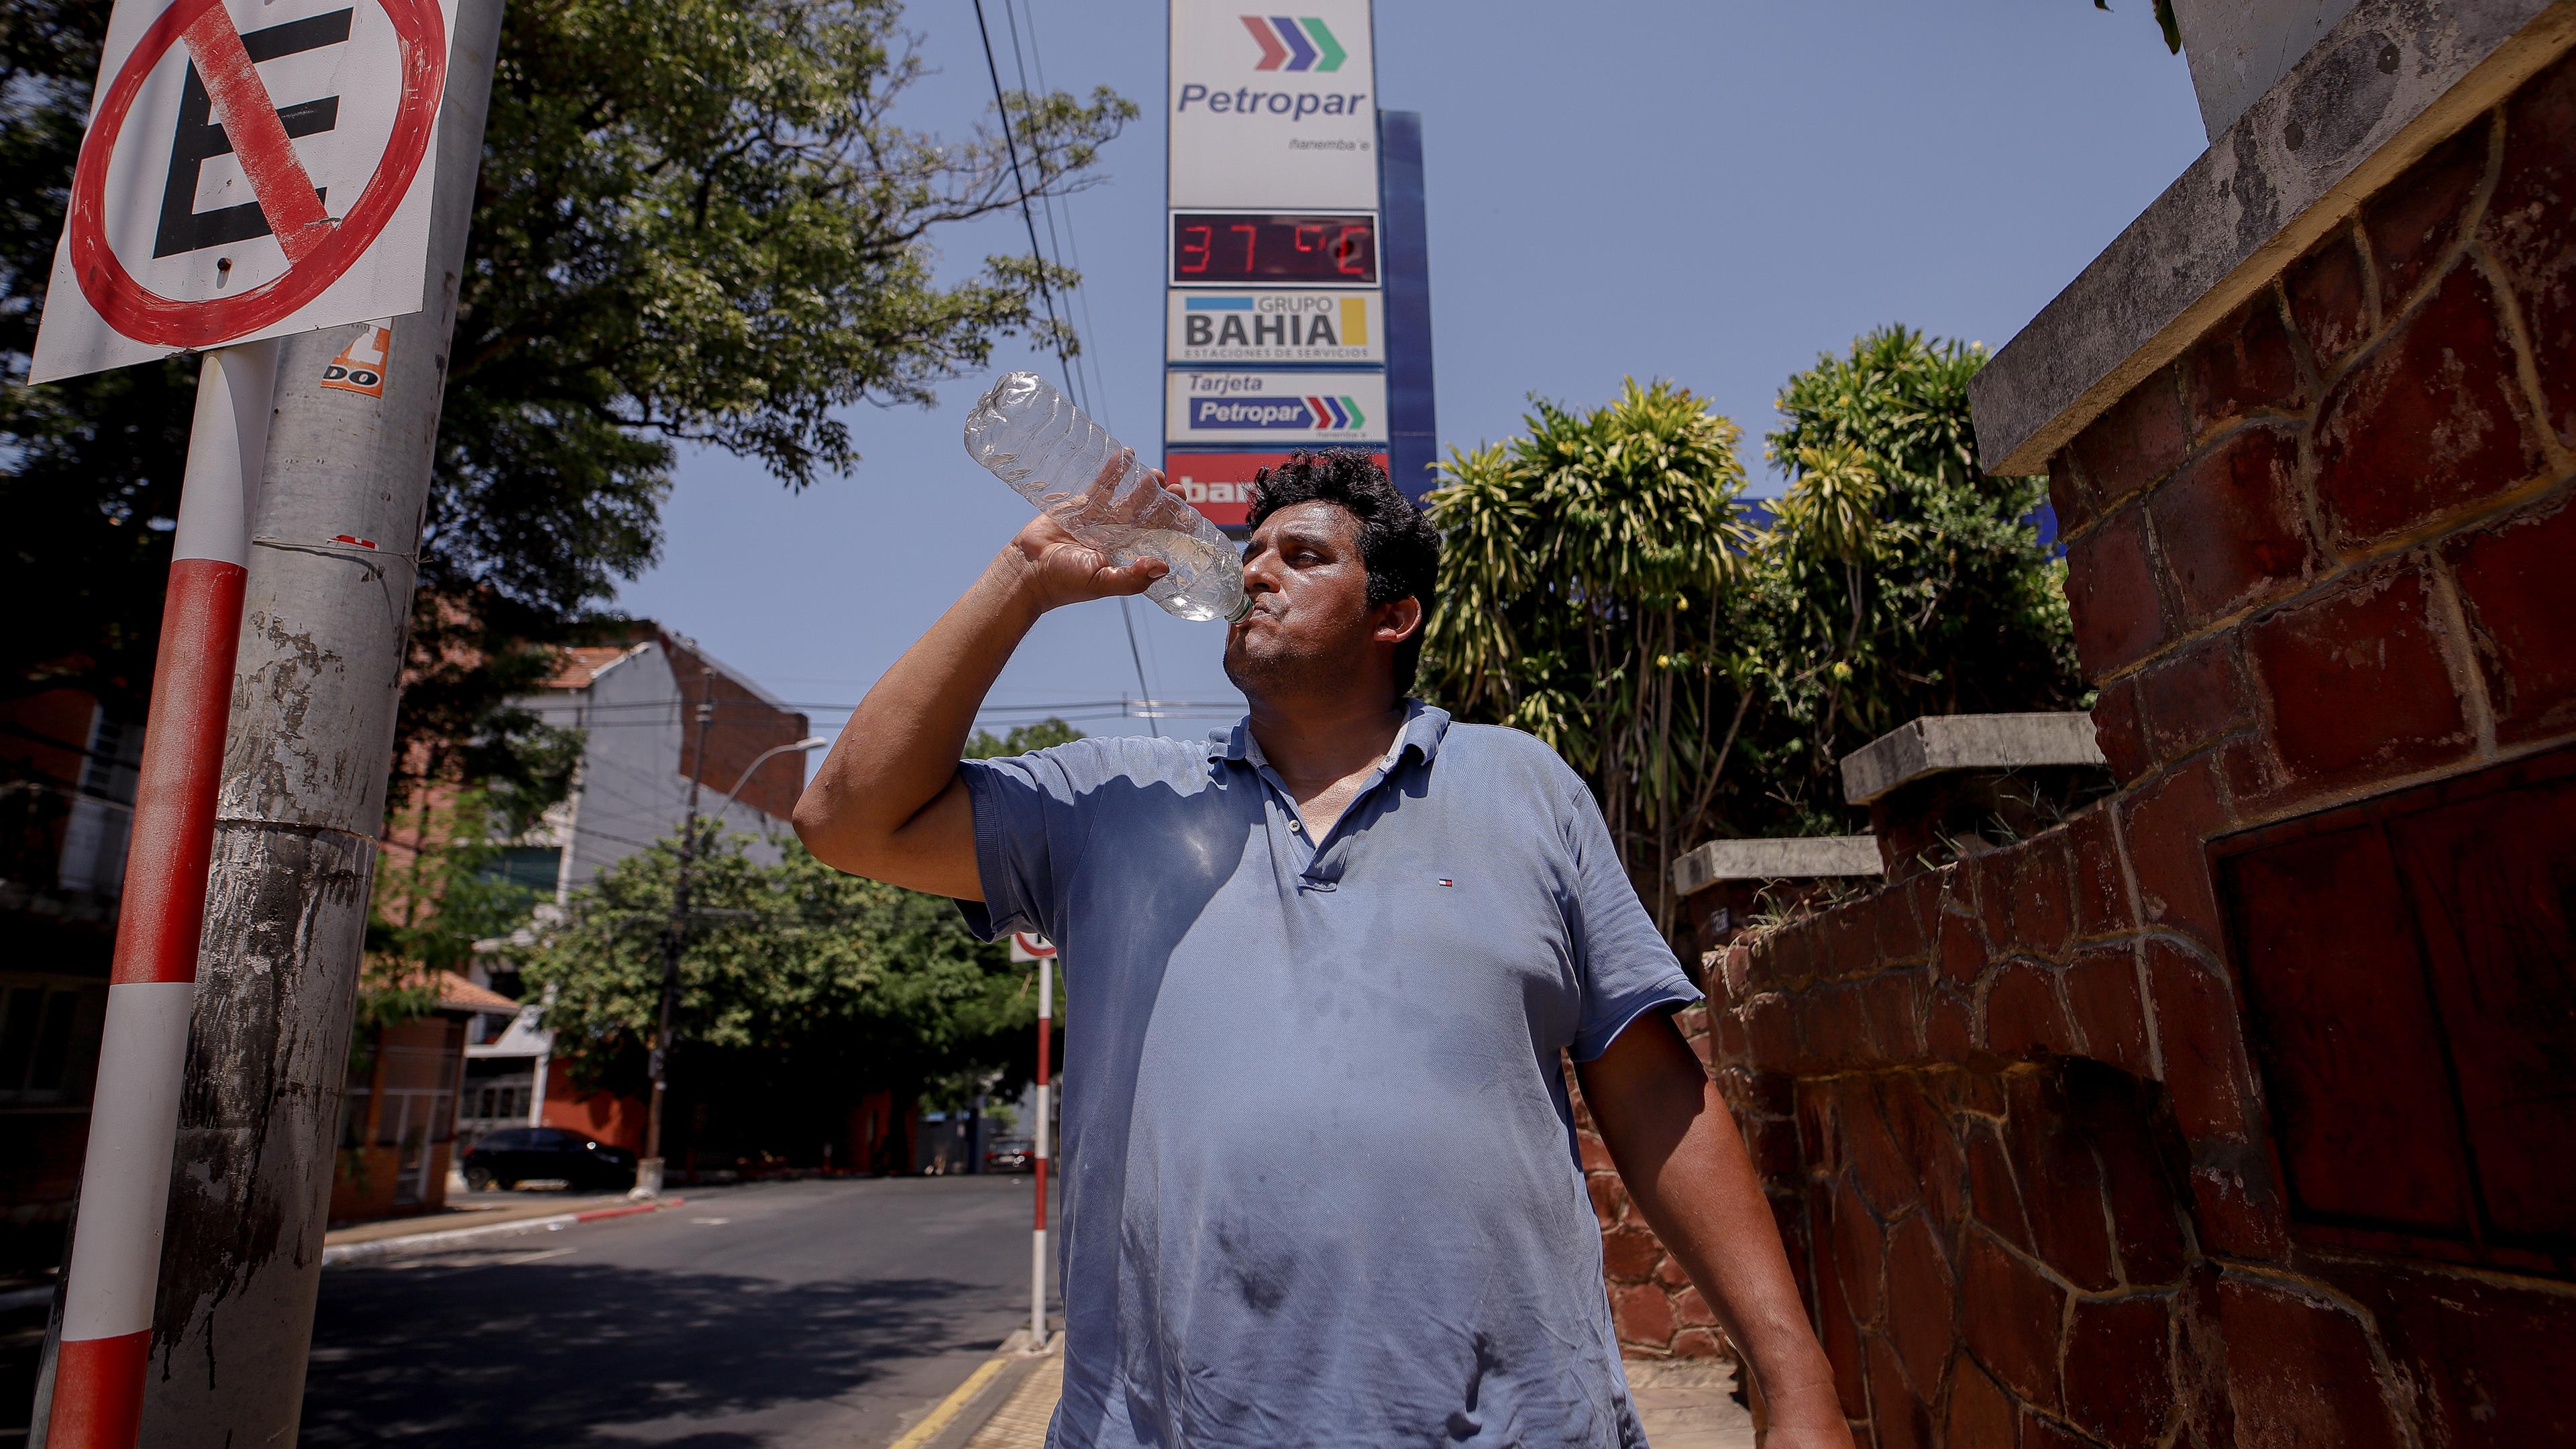 Paraguay, Asuncion: Ein Mann trinkt am Samstag Wasser aus einer Flasche auf einer Straße